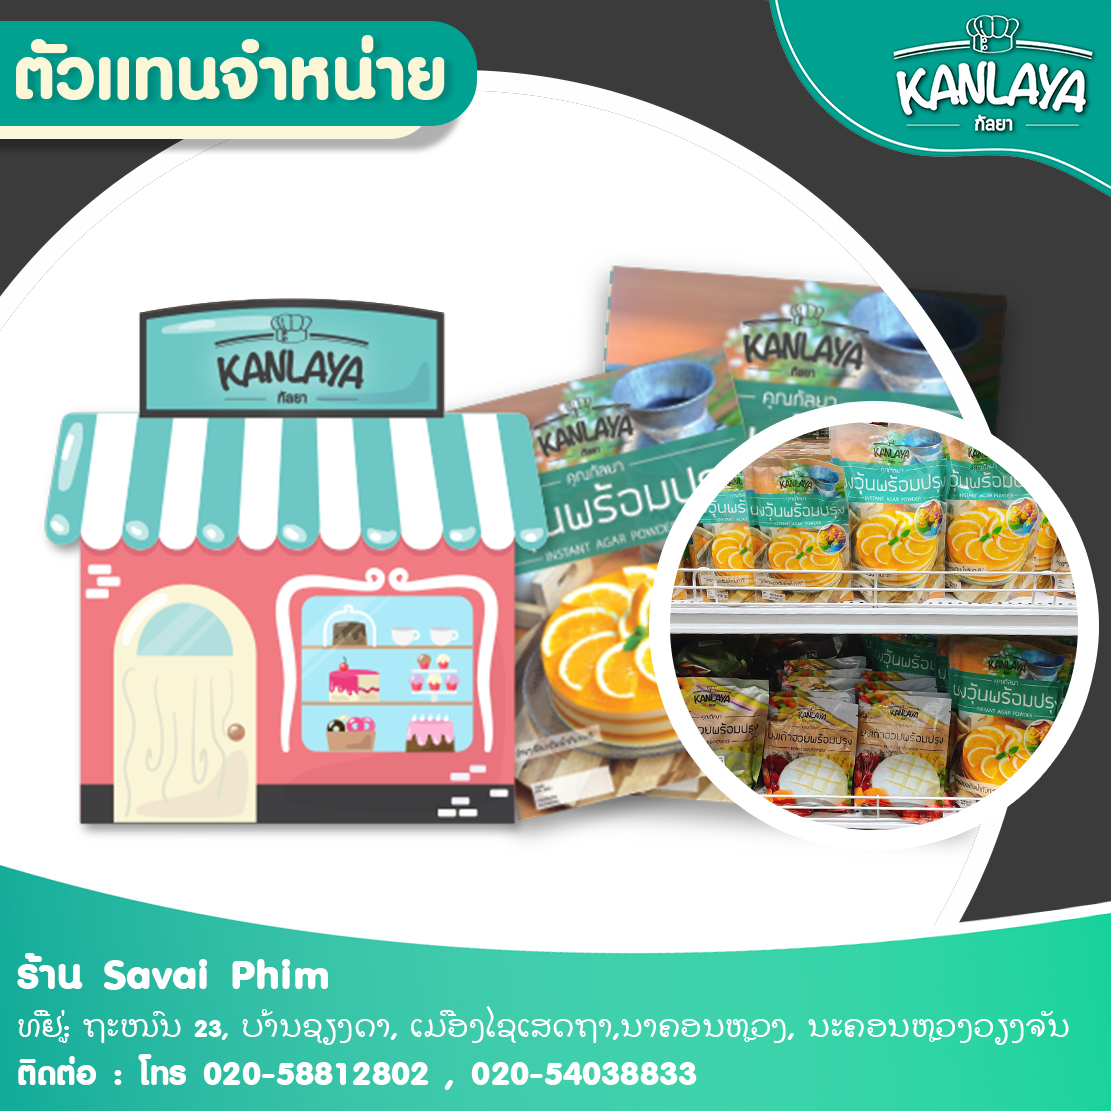 ร้าน Savai Phim